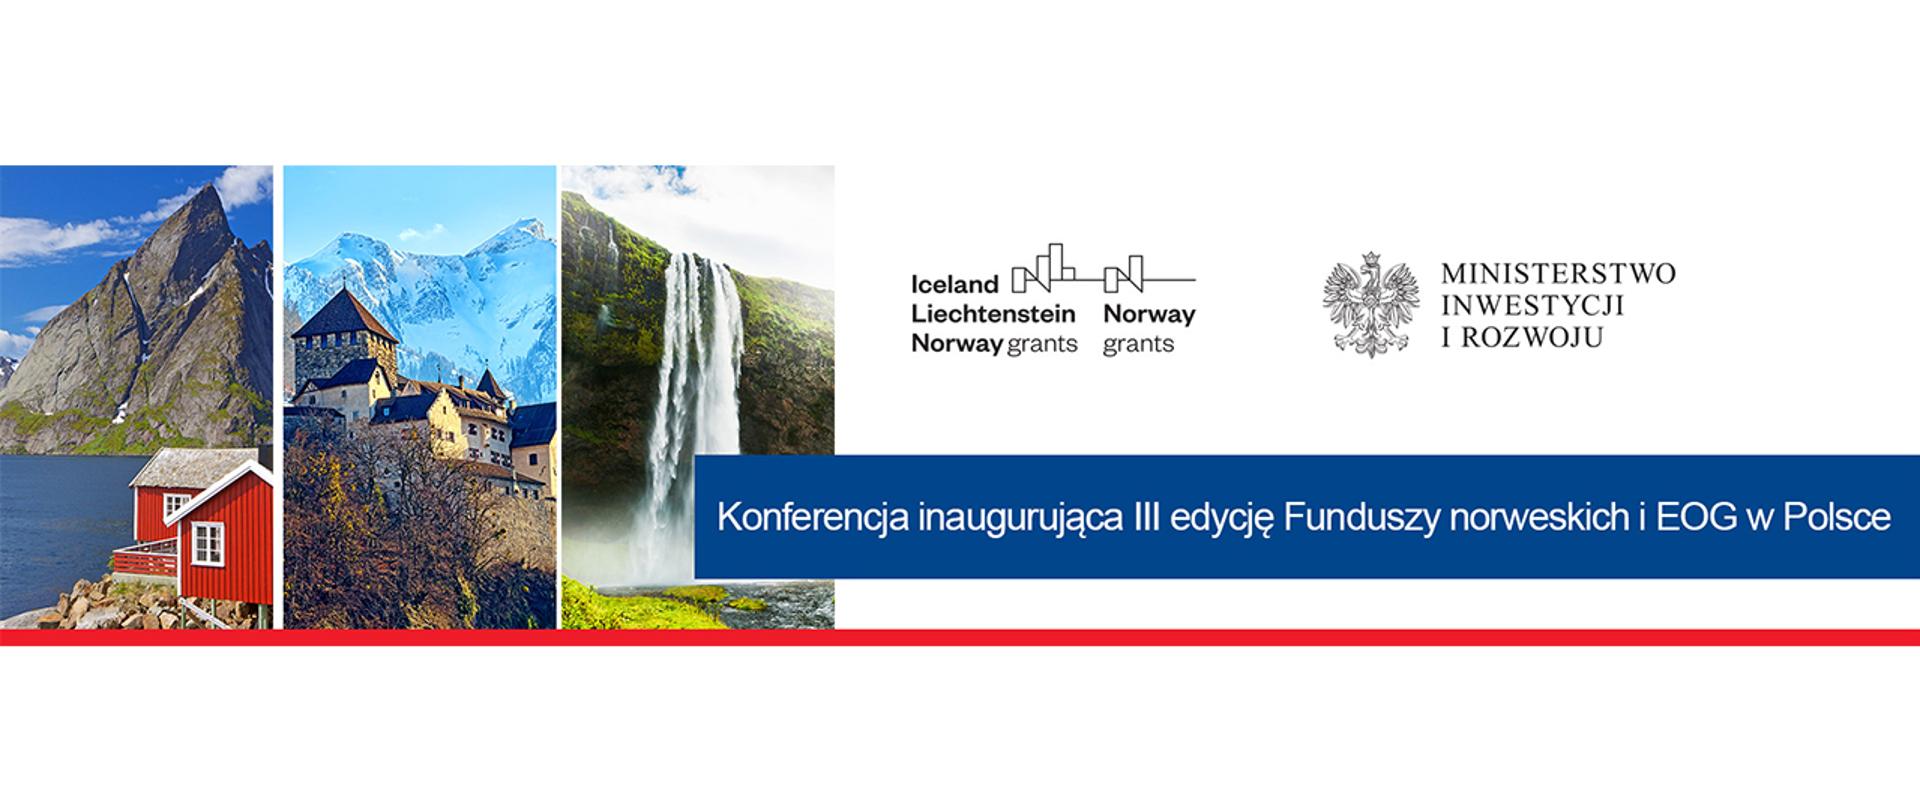 Konferencja inaugurująca III edycję Funduszy norweskich i EOG - 12 września 2019 r.